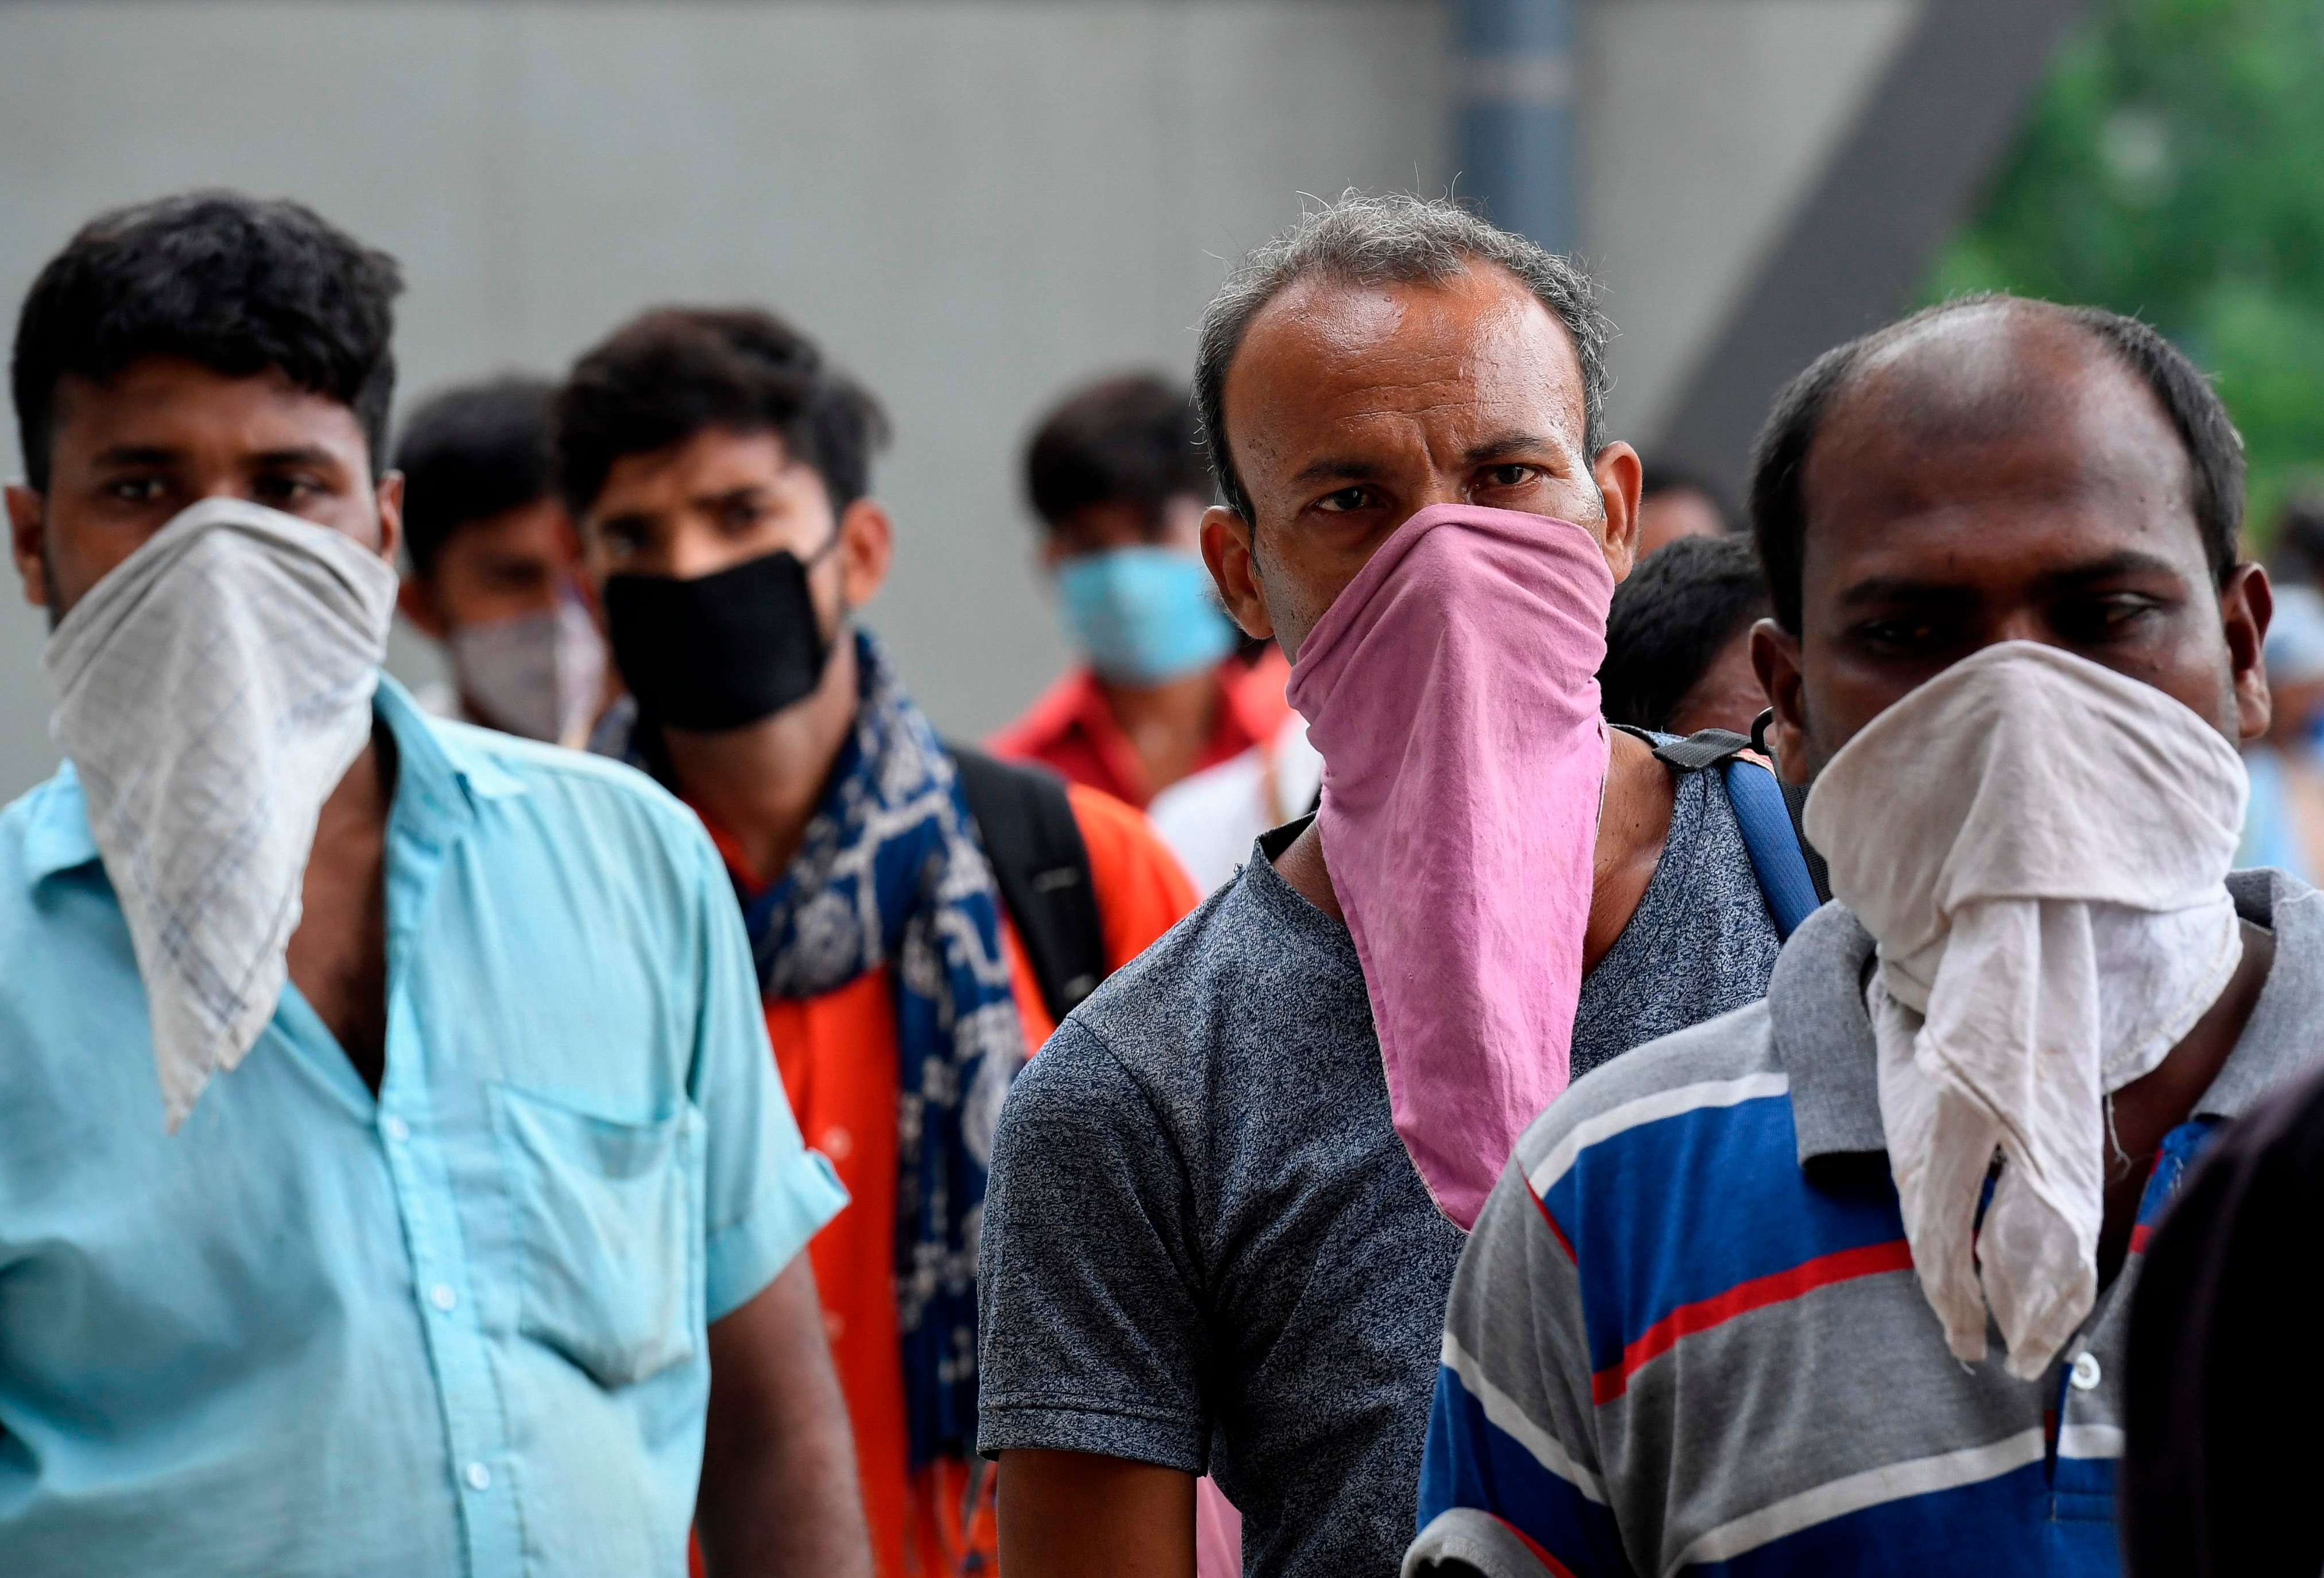 2020年8月18日,外来务工者到达印度新德里后排队等待接受新冠病毒检测